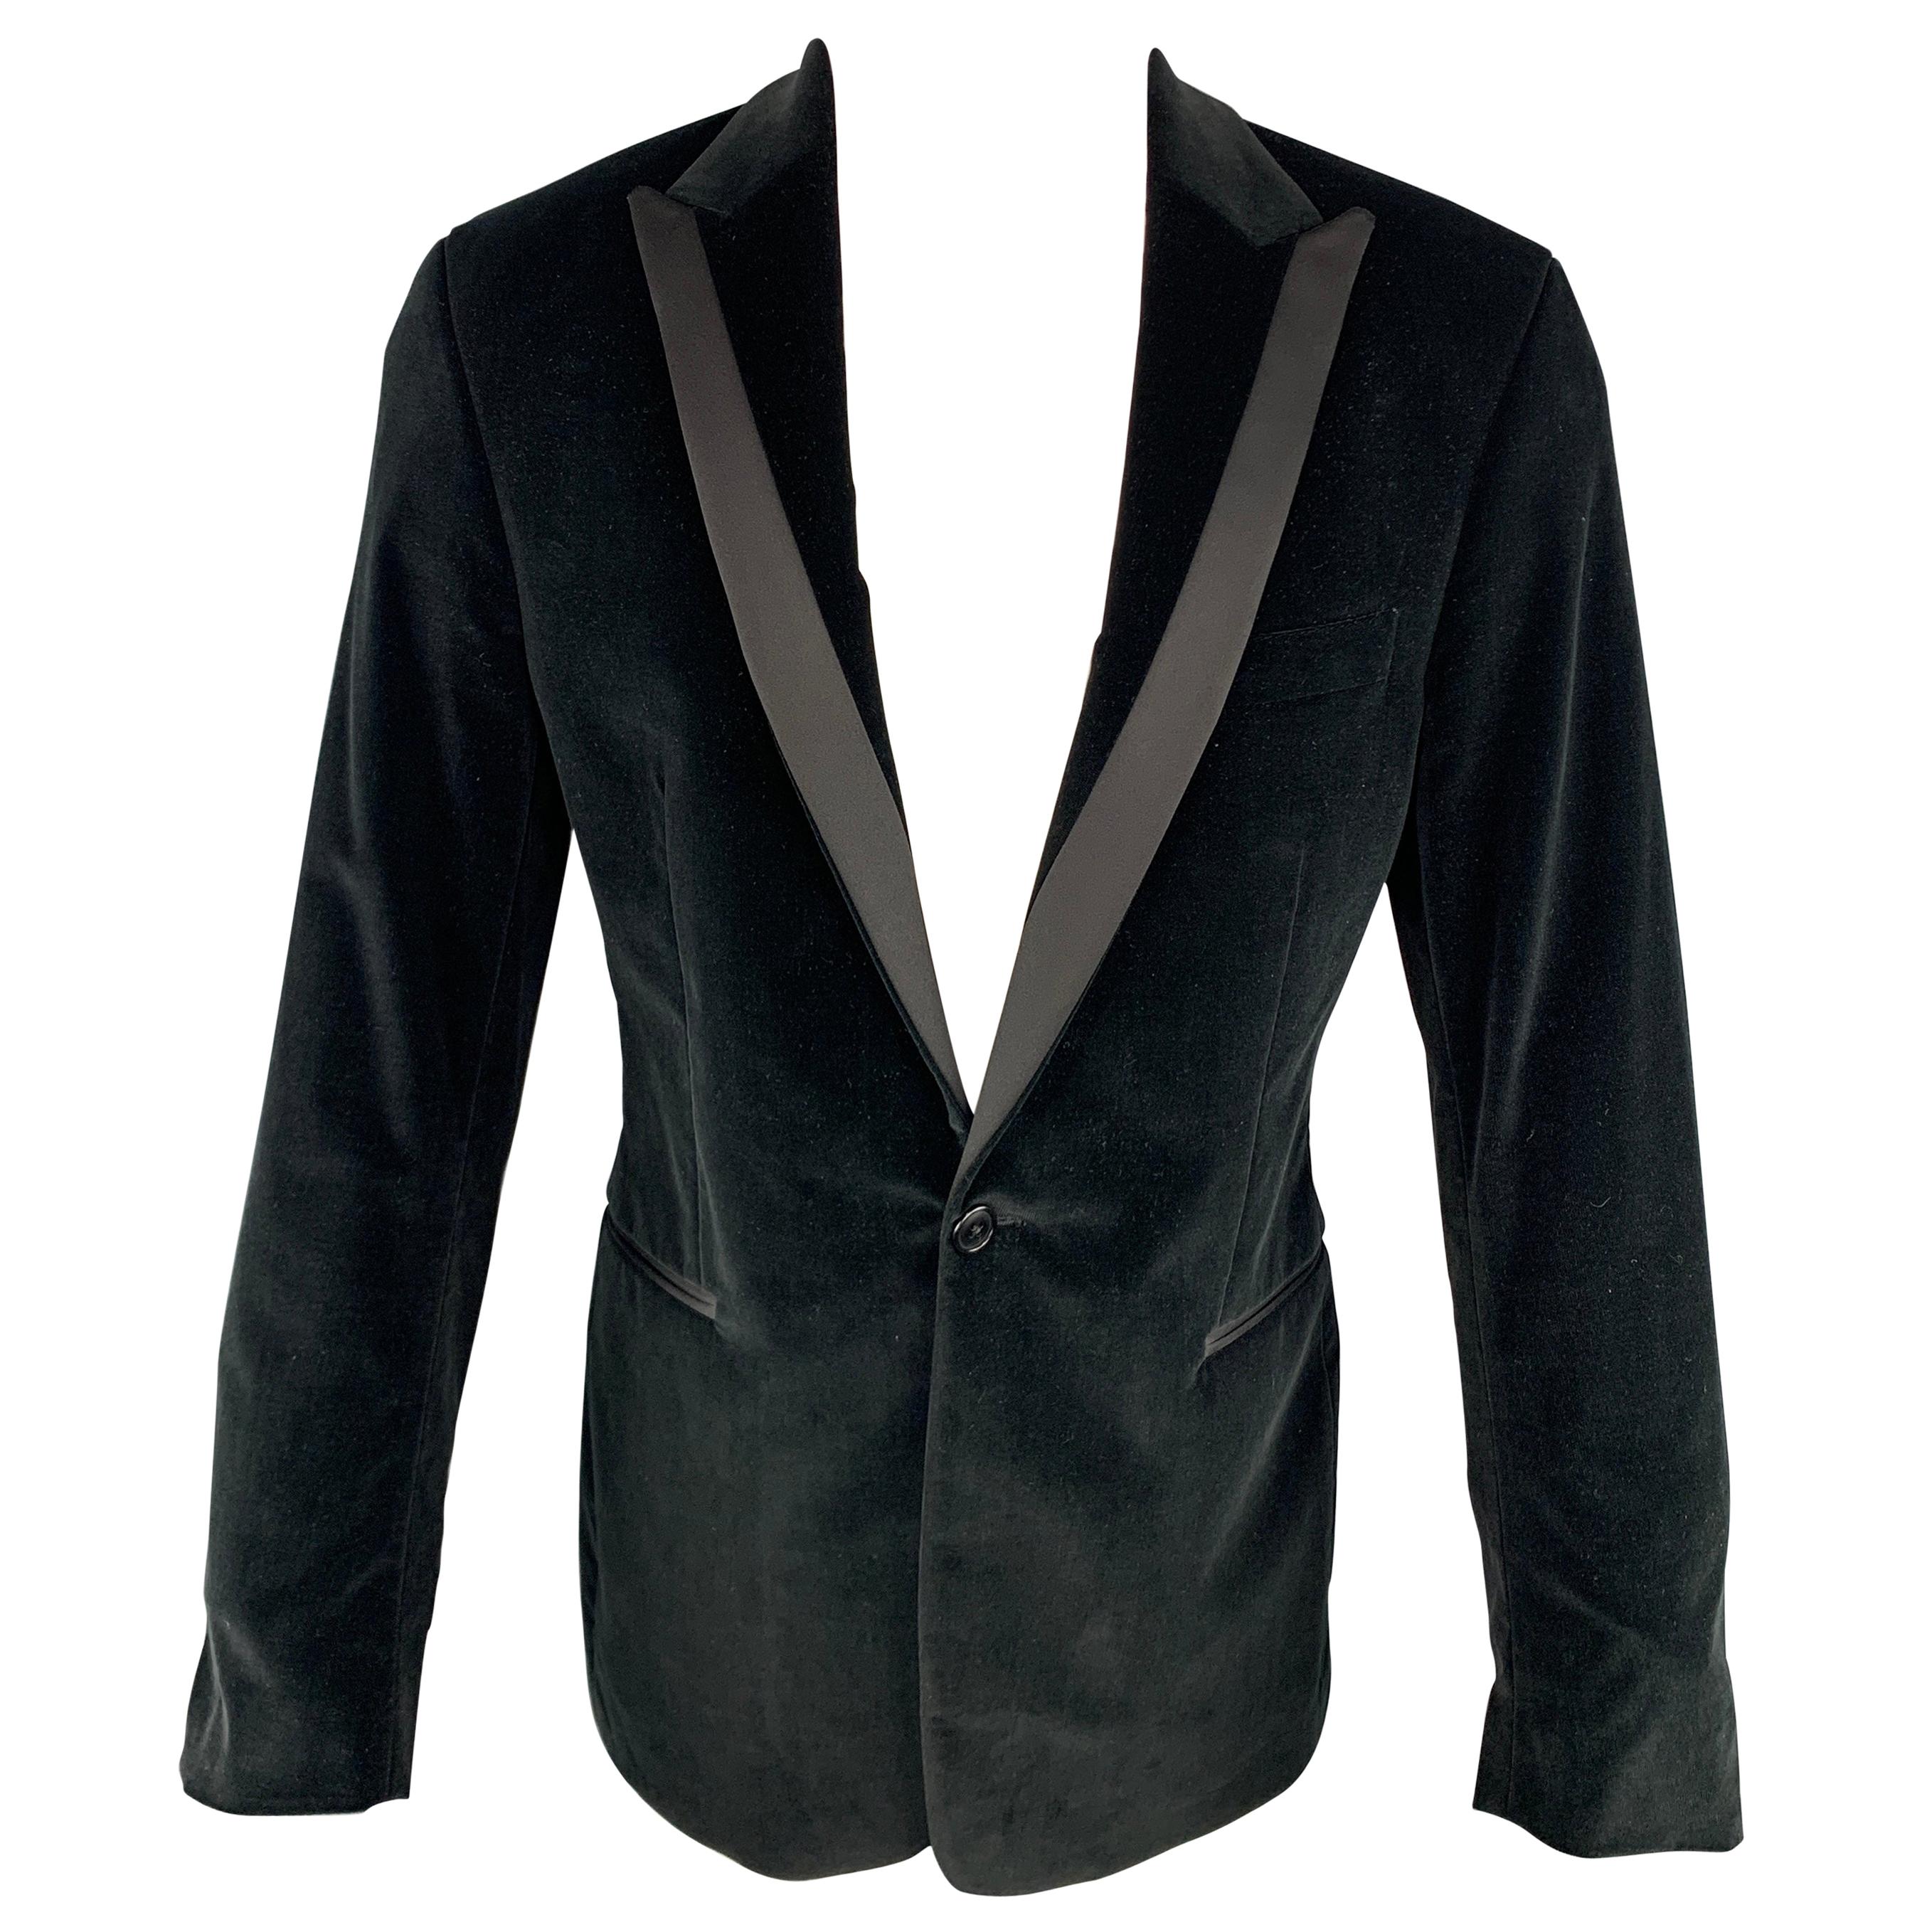 THEORY Chest Size 40 Regular Solid Black Velvet Peak Lapel Sport Coat